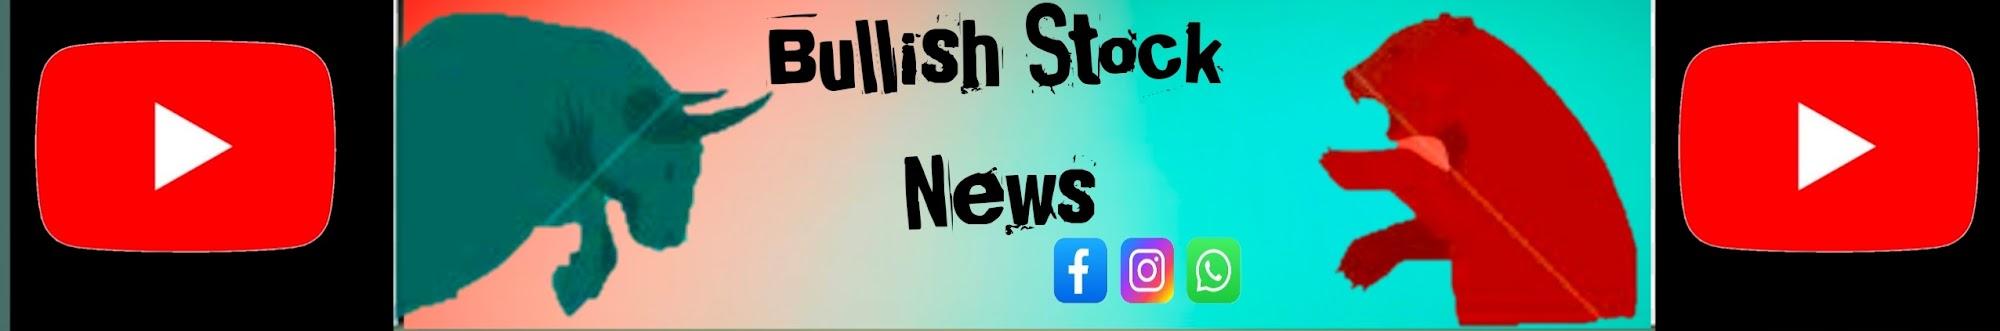 Bullish Stock News